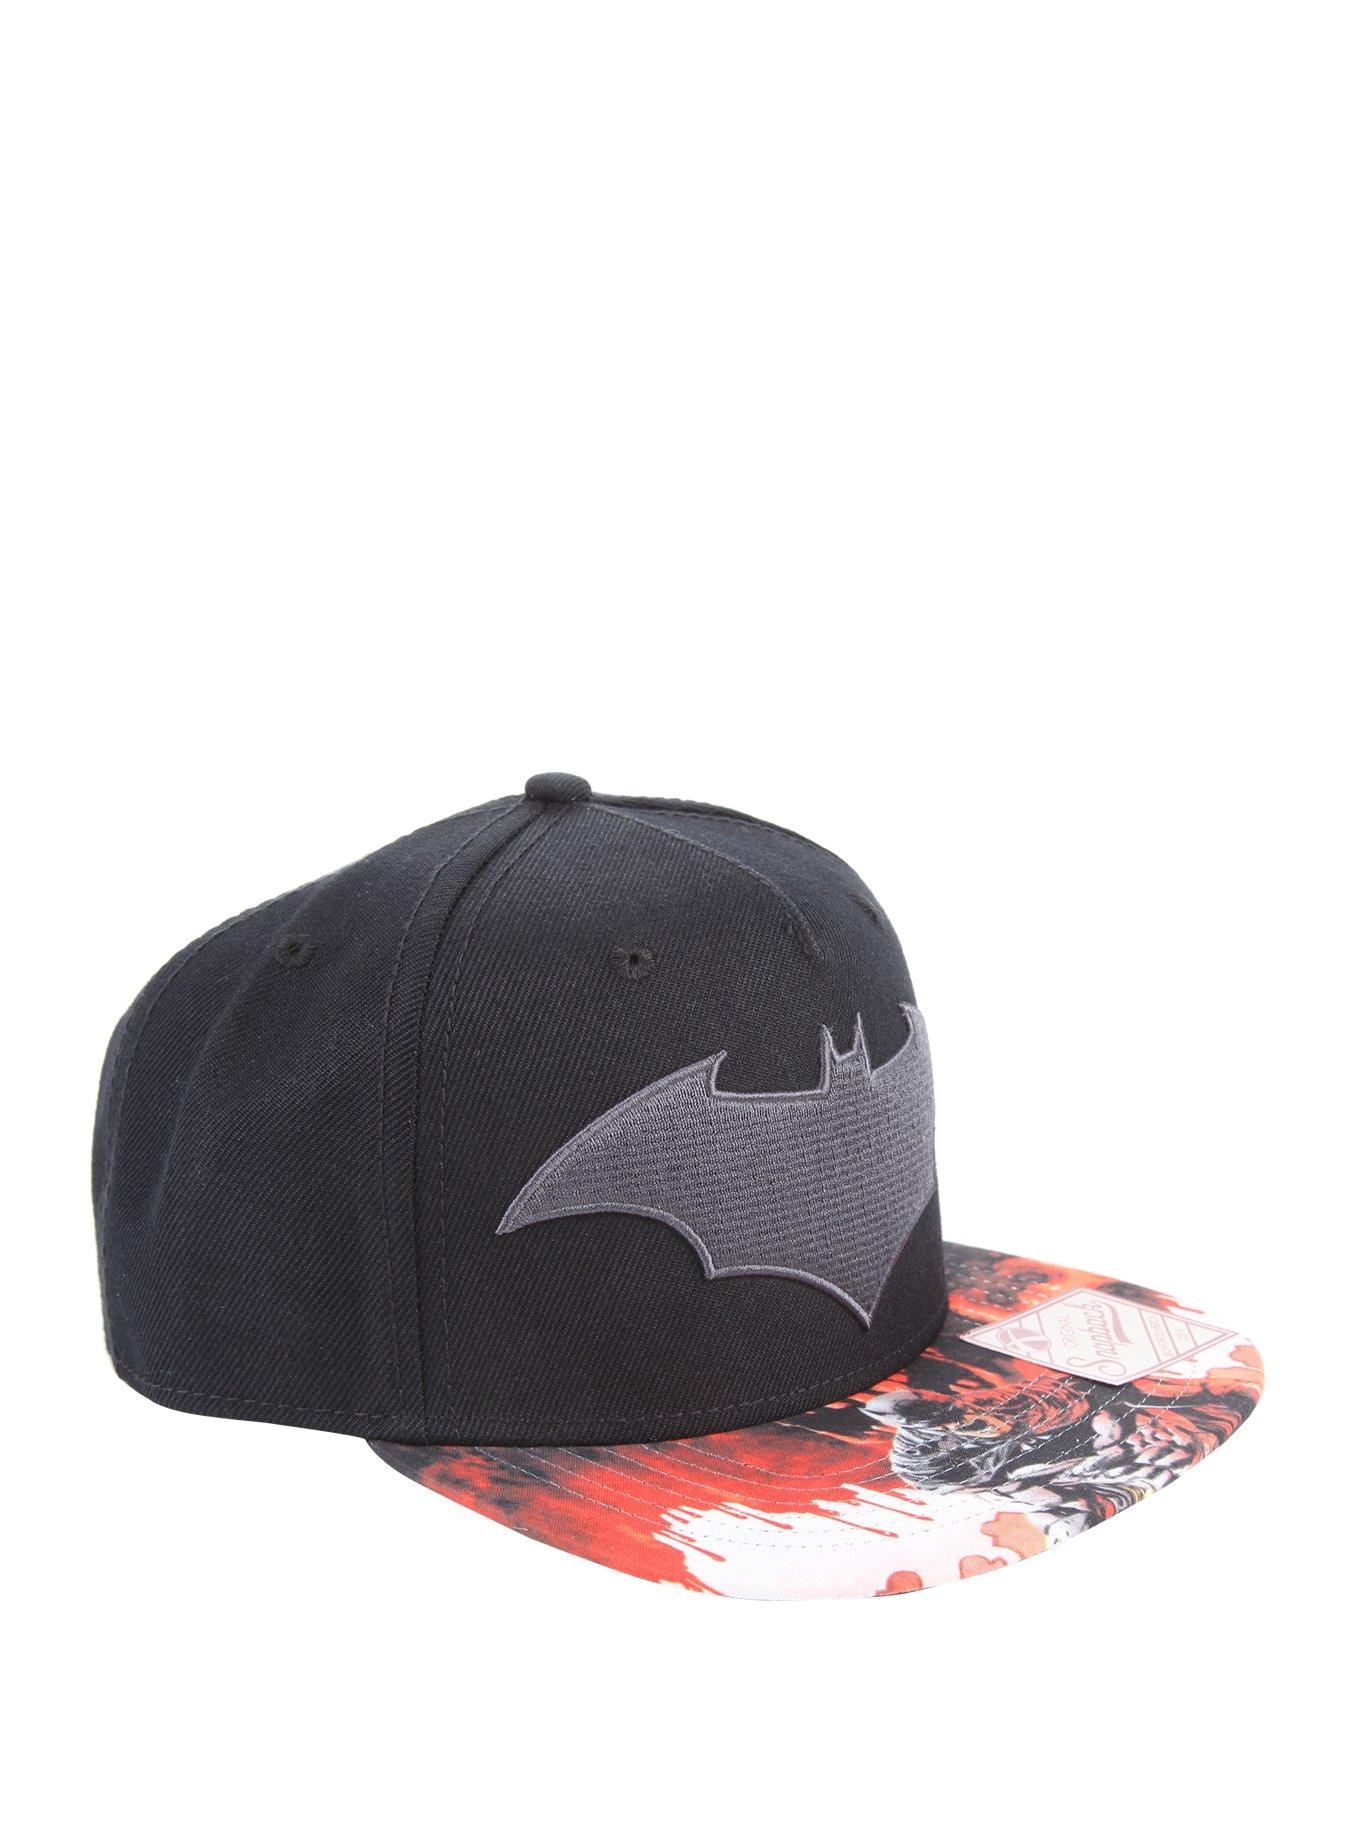 DC Comics Batman Hush Snapback Hat, , hi-res